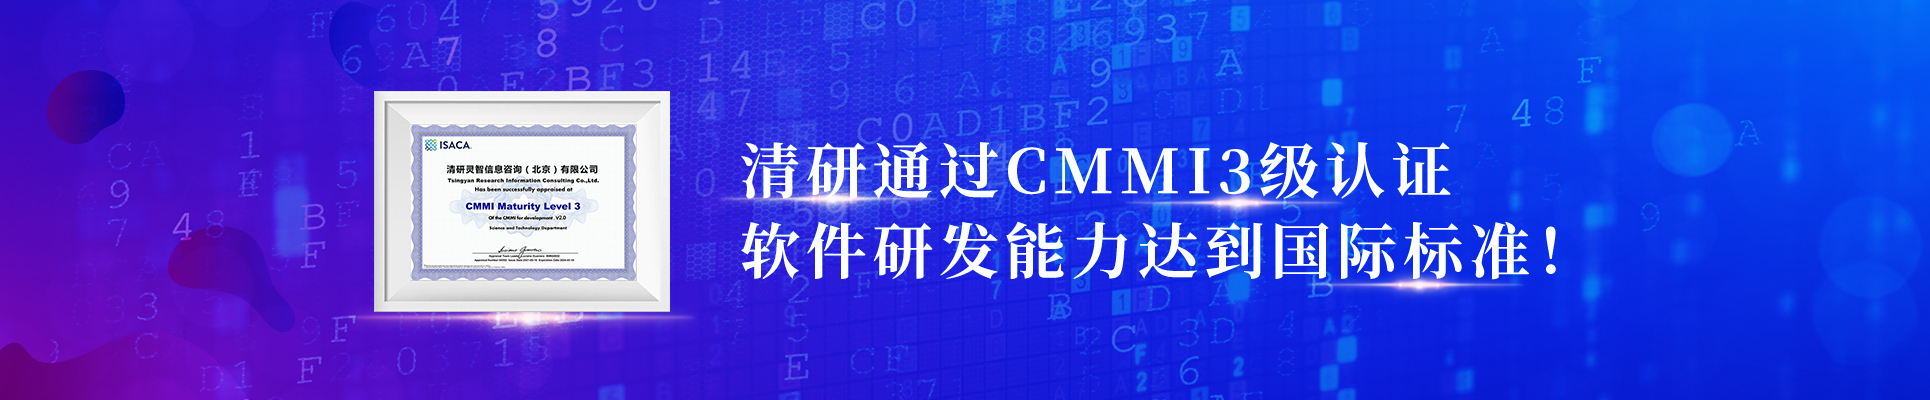 云顶国际集团通过CMMI3级认证，软件研发能力抵达国际标准